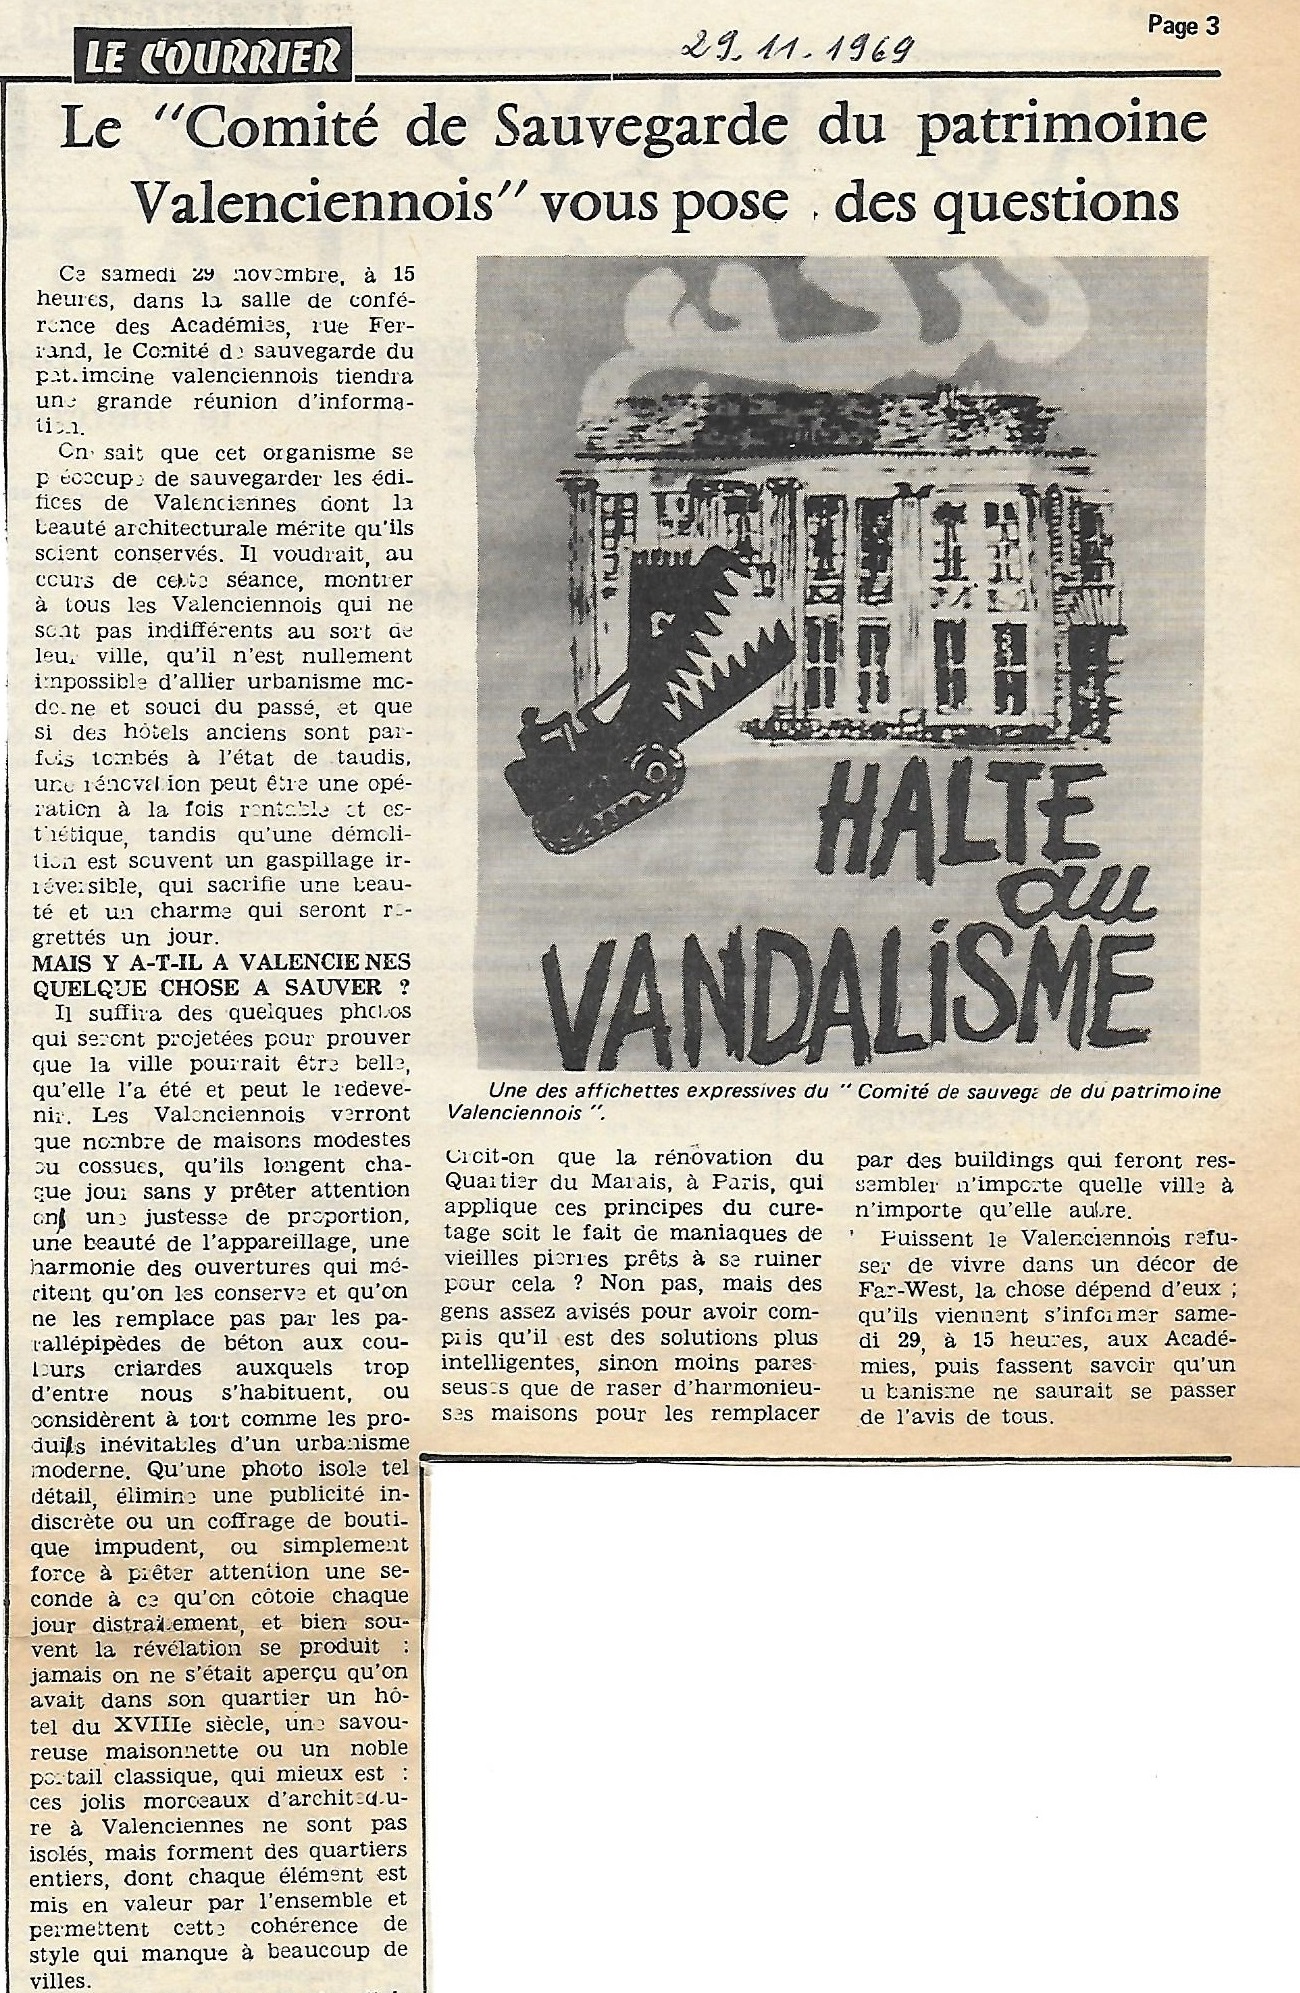 Le_Courrier_29-11-1969.jpg